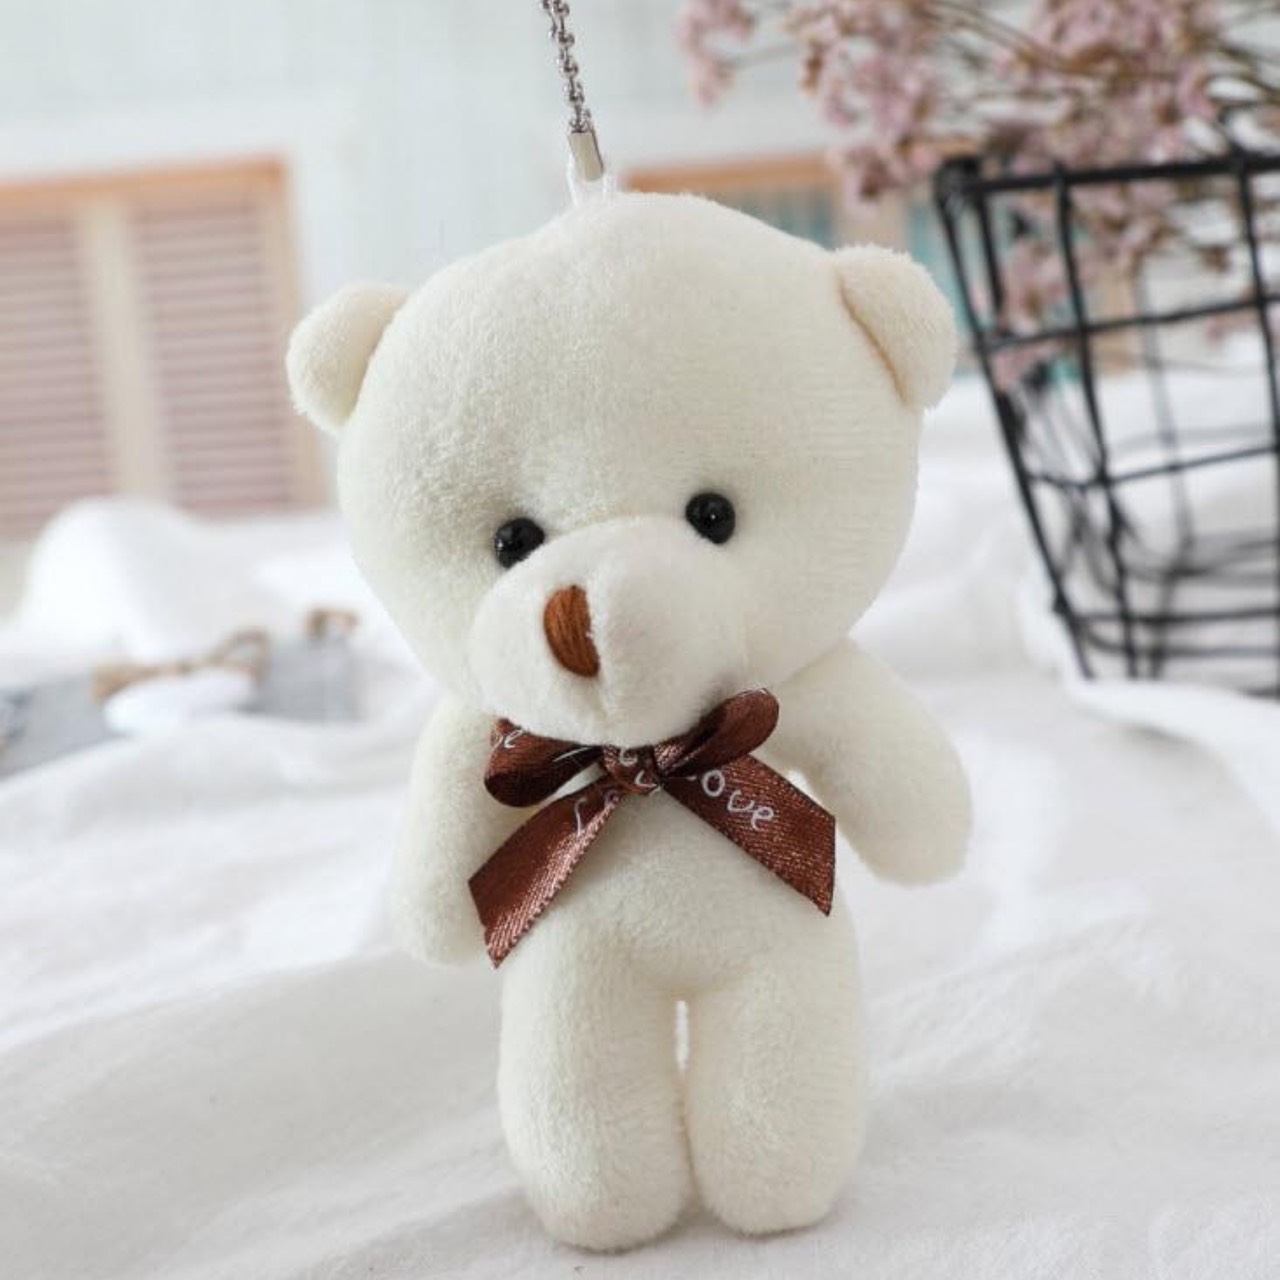 พวงกุญแจ ตุ๊กตาหมี พวงุญแจน่ารัก แฟชั่น 3D สีสันสดใส ห้อยกระเป๋า ห้อยโทรศัพท์ สไตล์เกาหลี